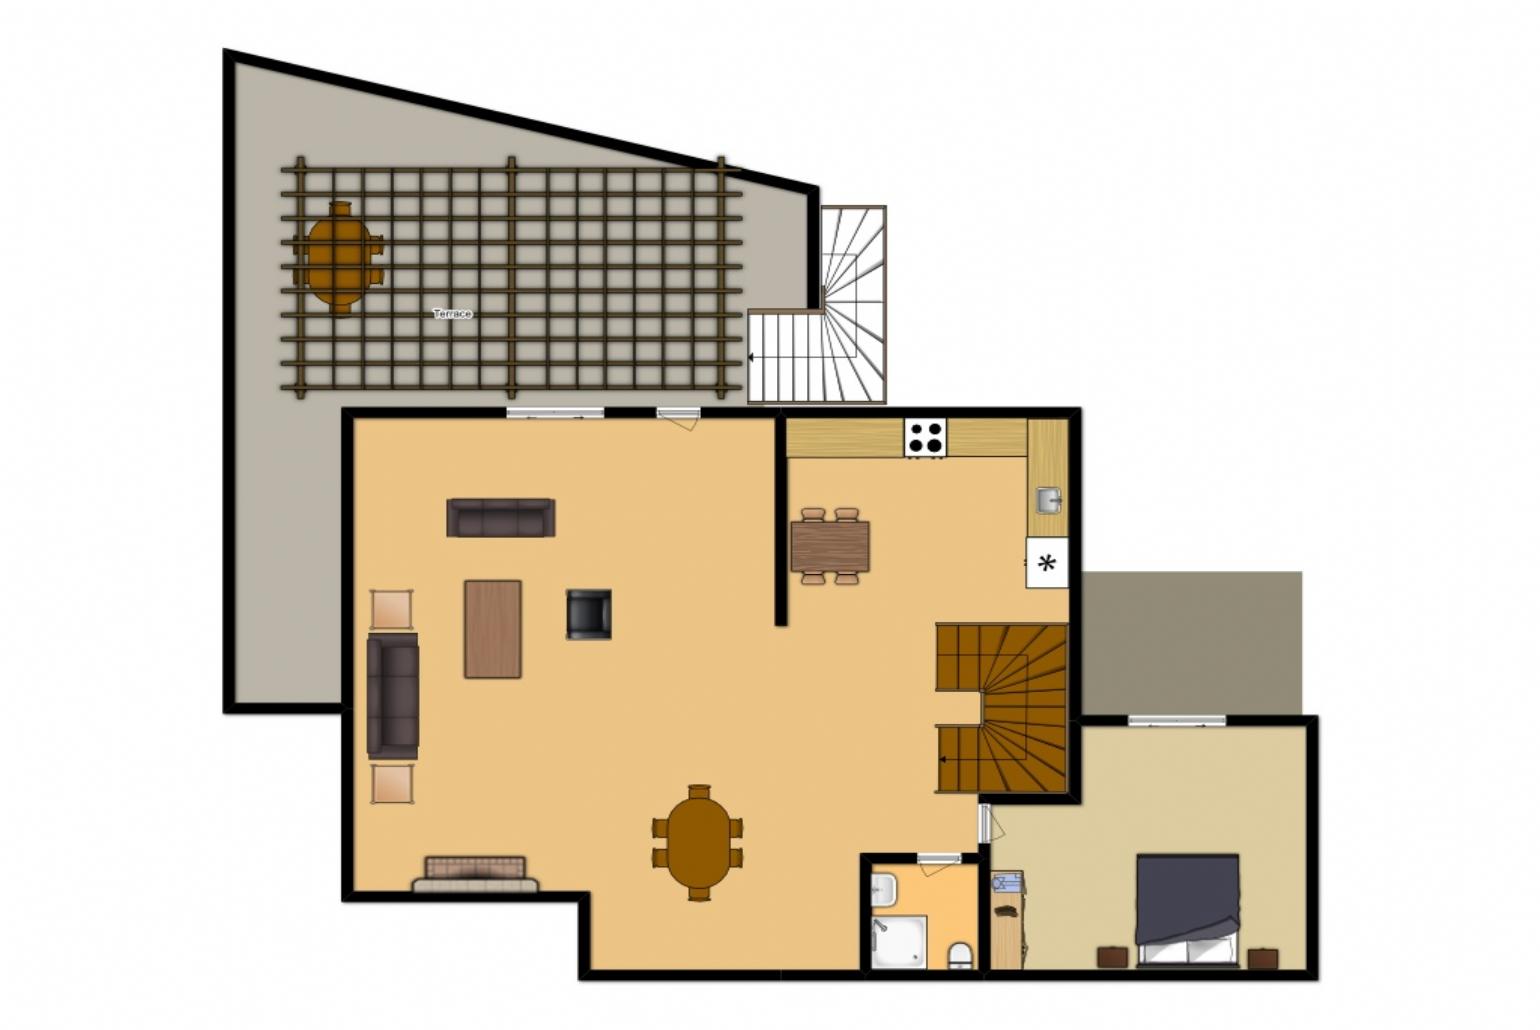 Floor Plan: Second Floor